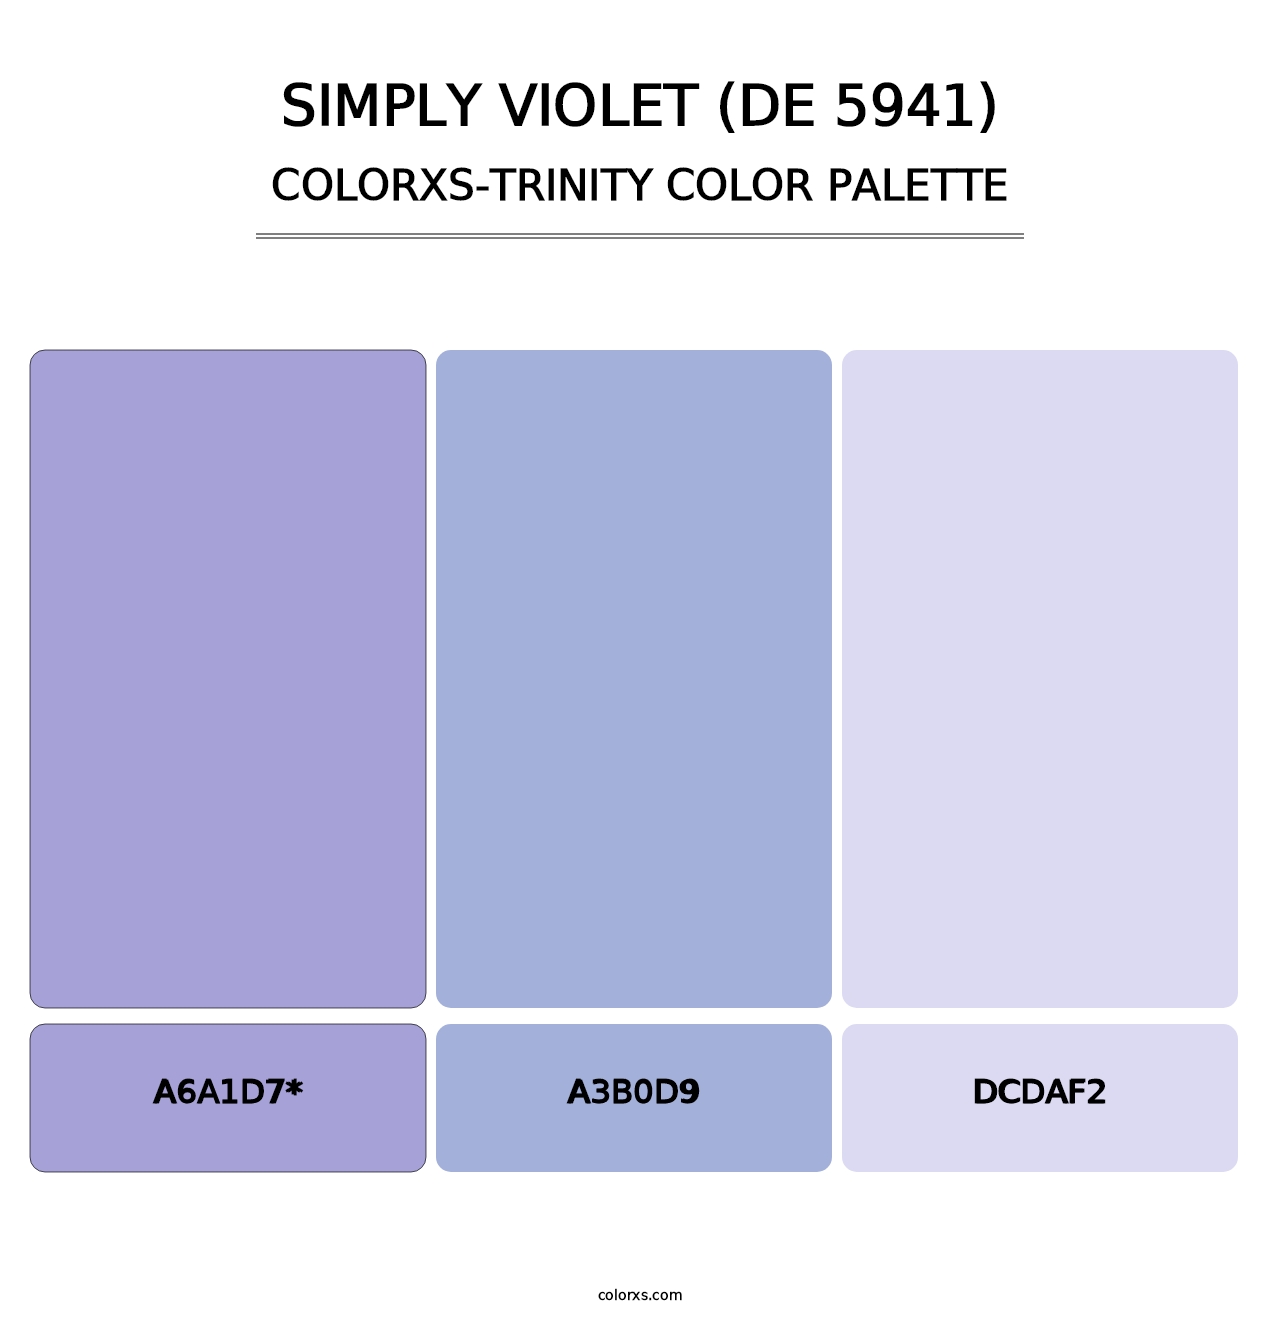 Simply Violet (DE 5941) - Colorxs Trinity Palette